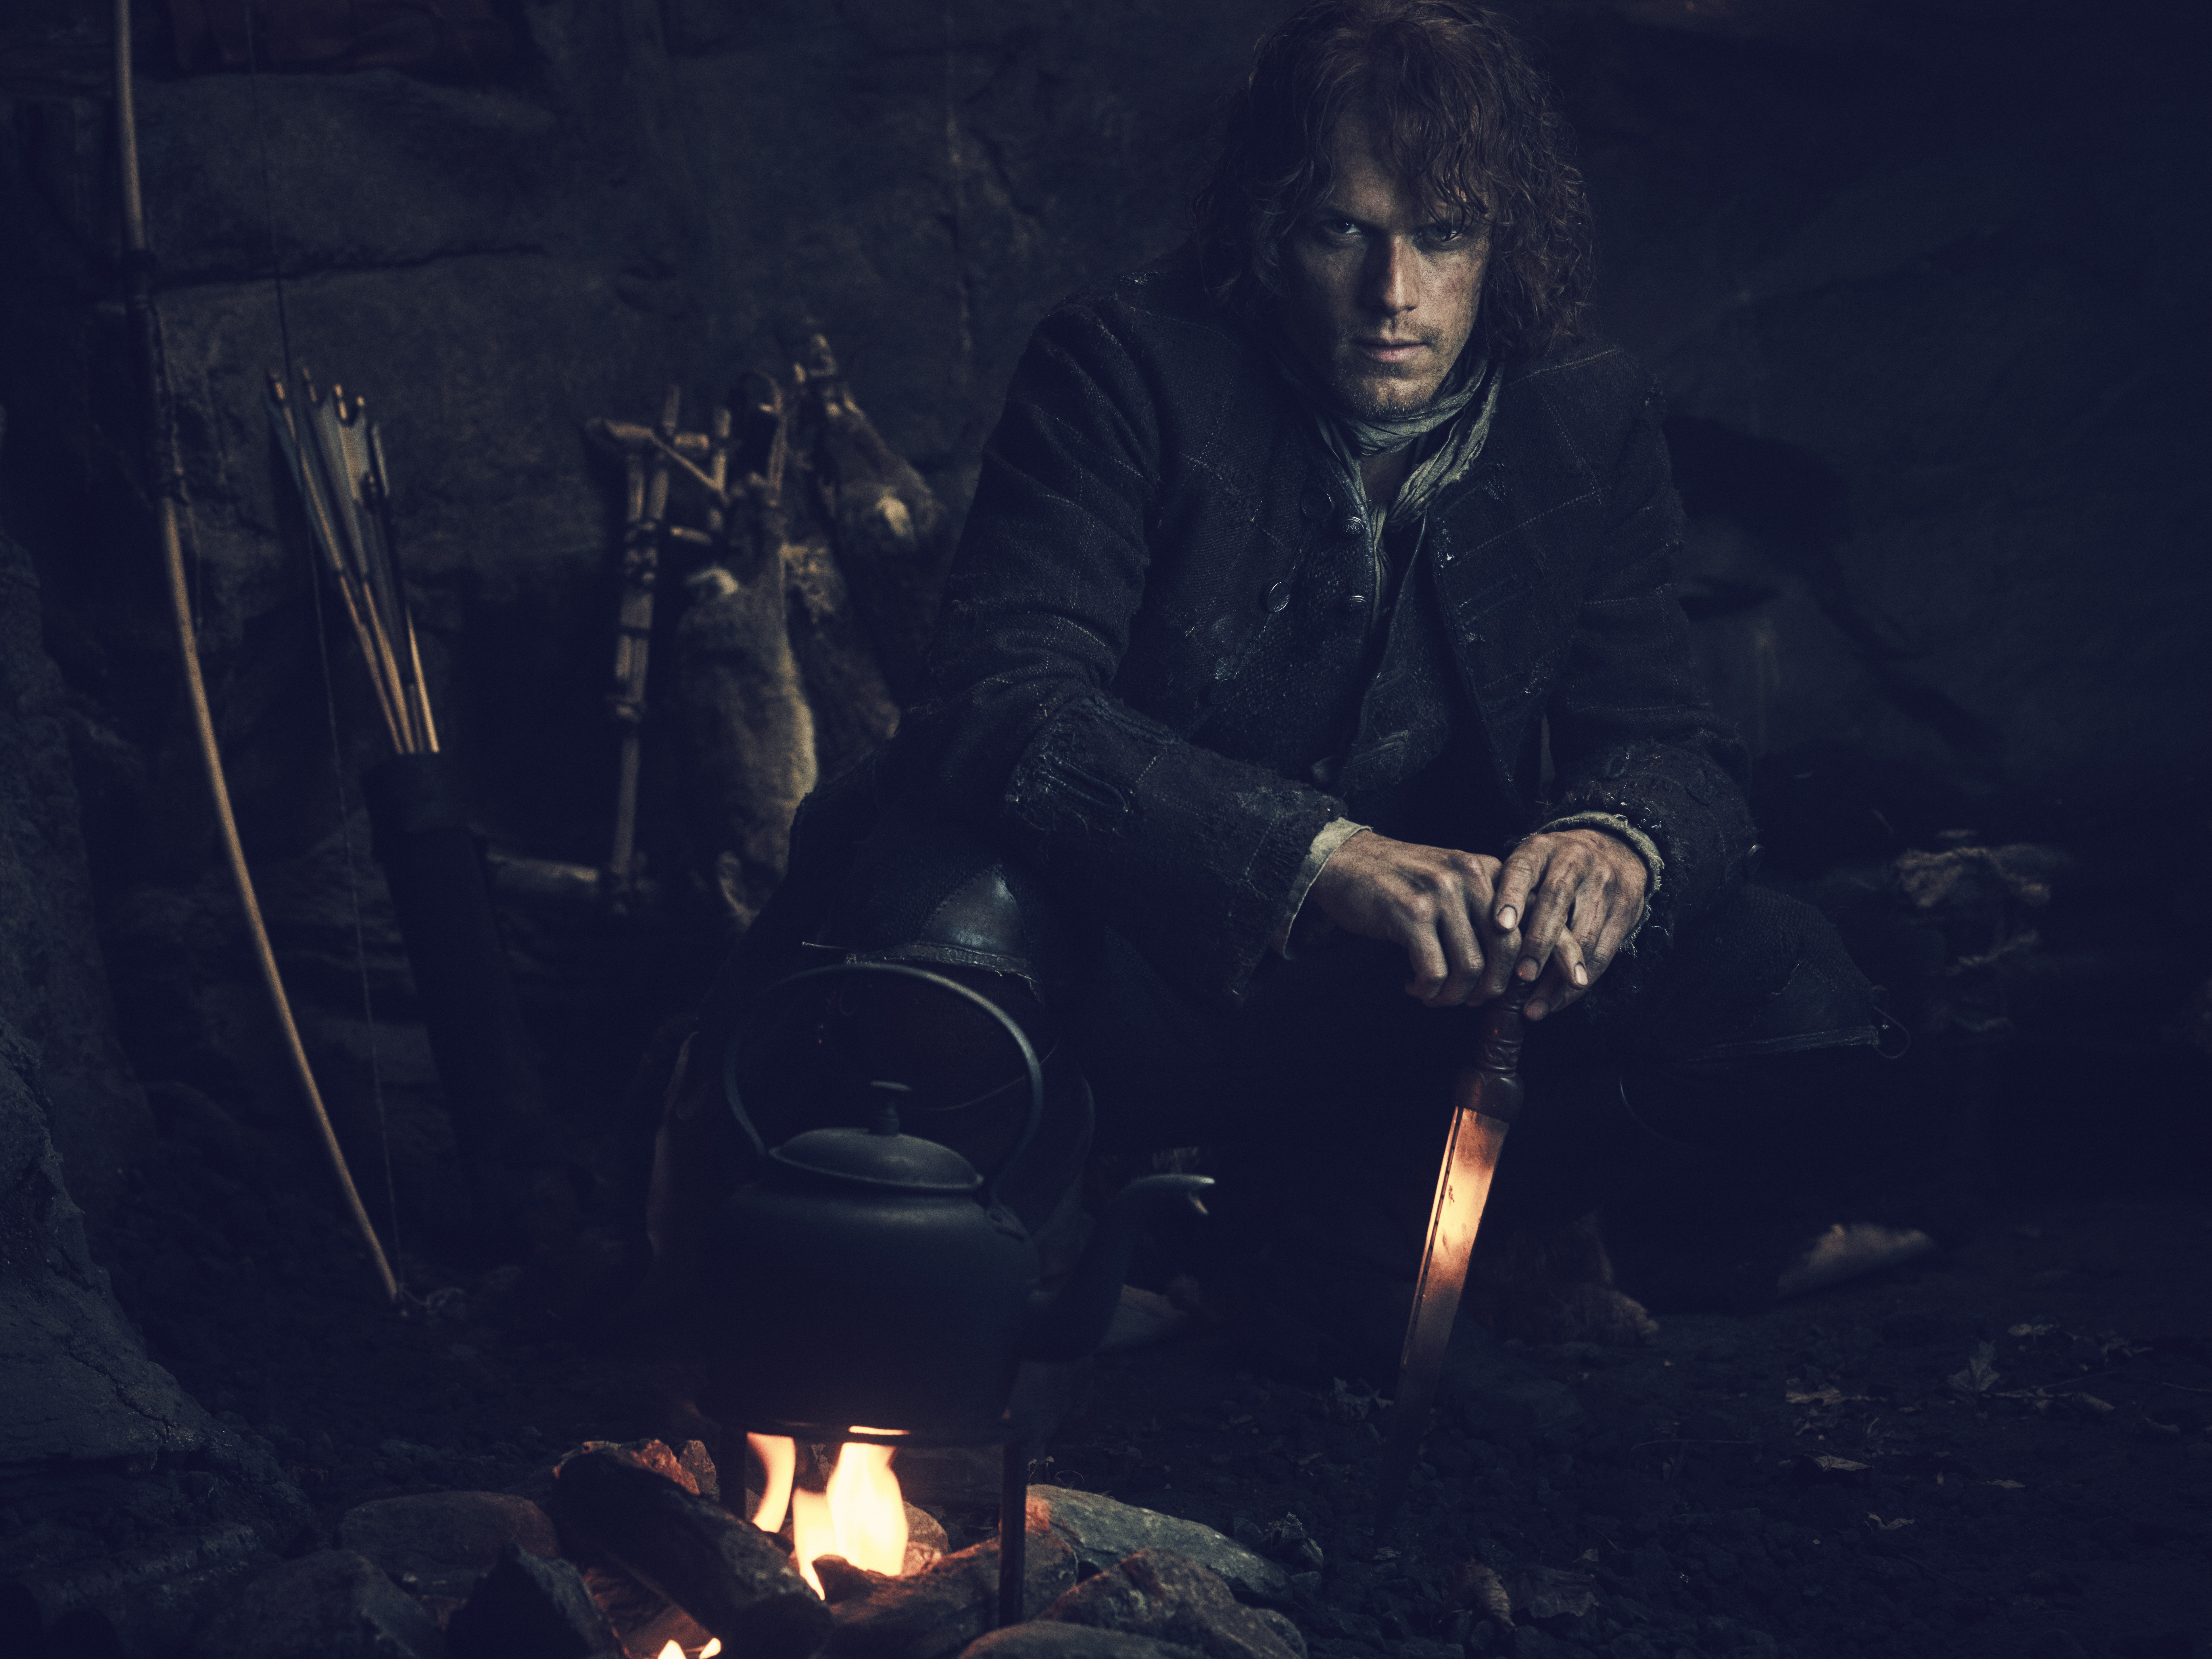 Download mobile wallpaper Outlander, Tv Show, Jamie Fraser, Sam Heughan for free.